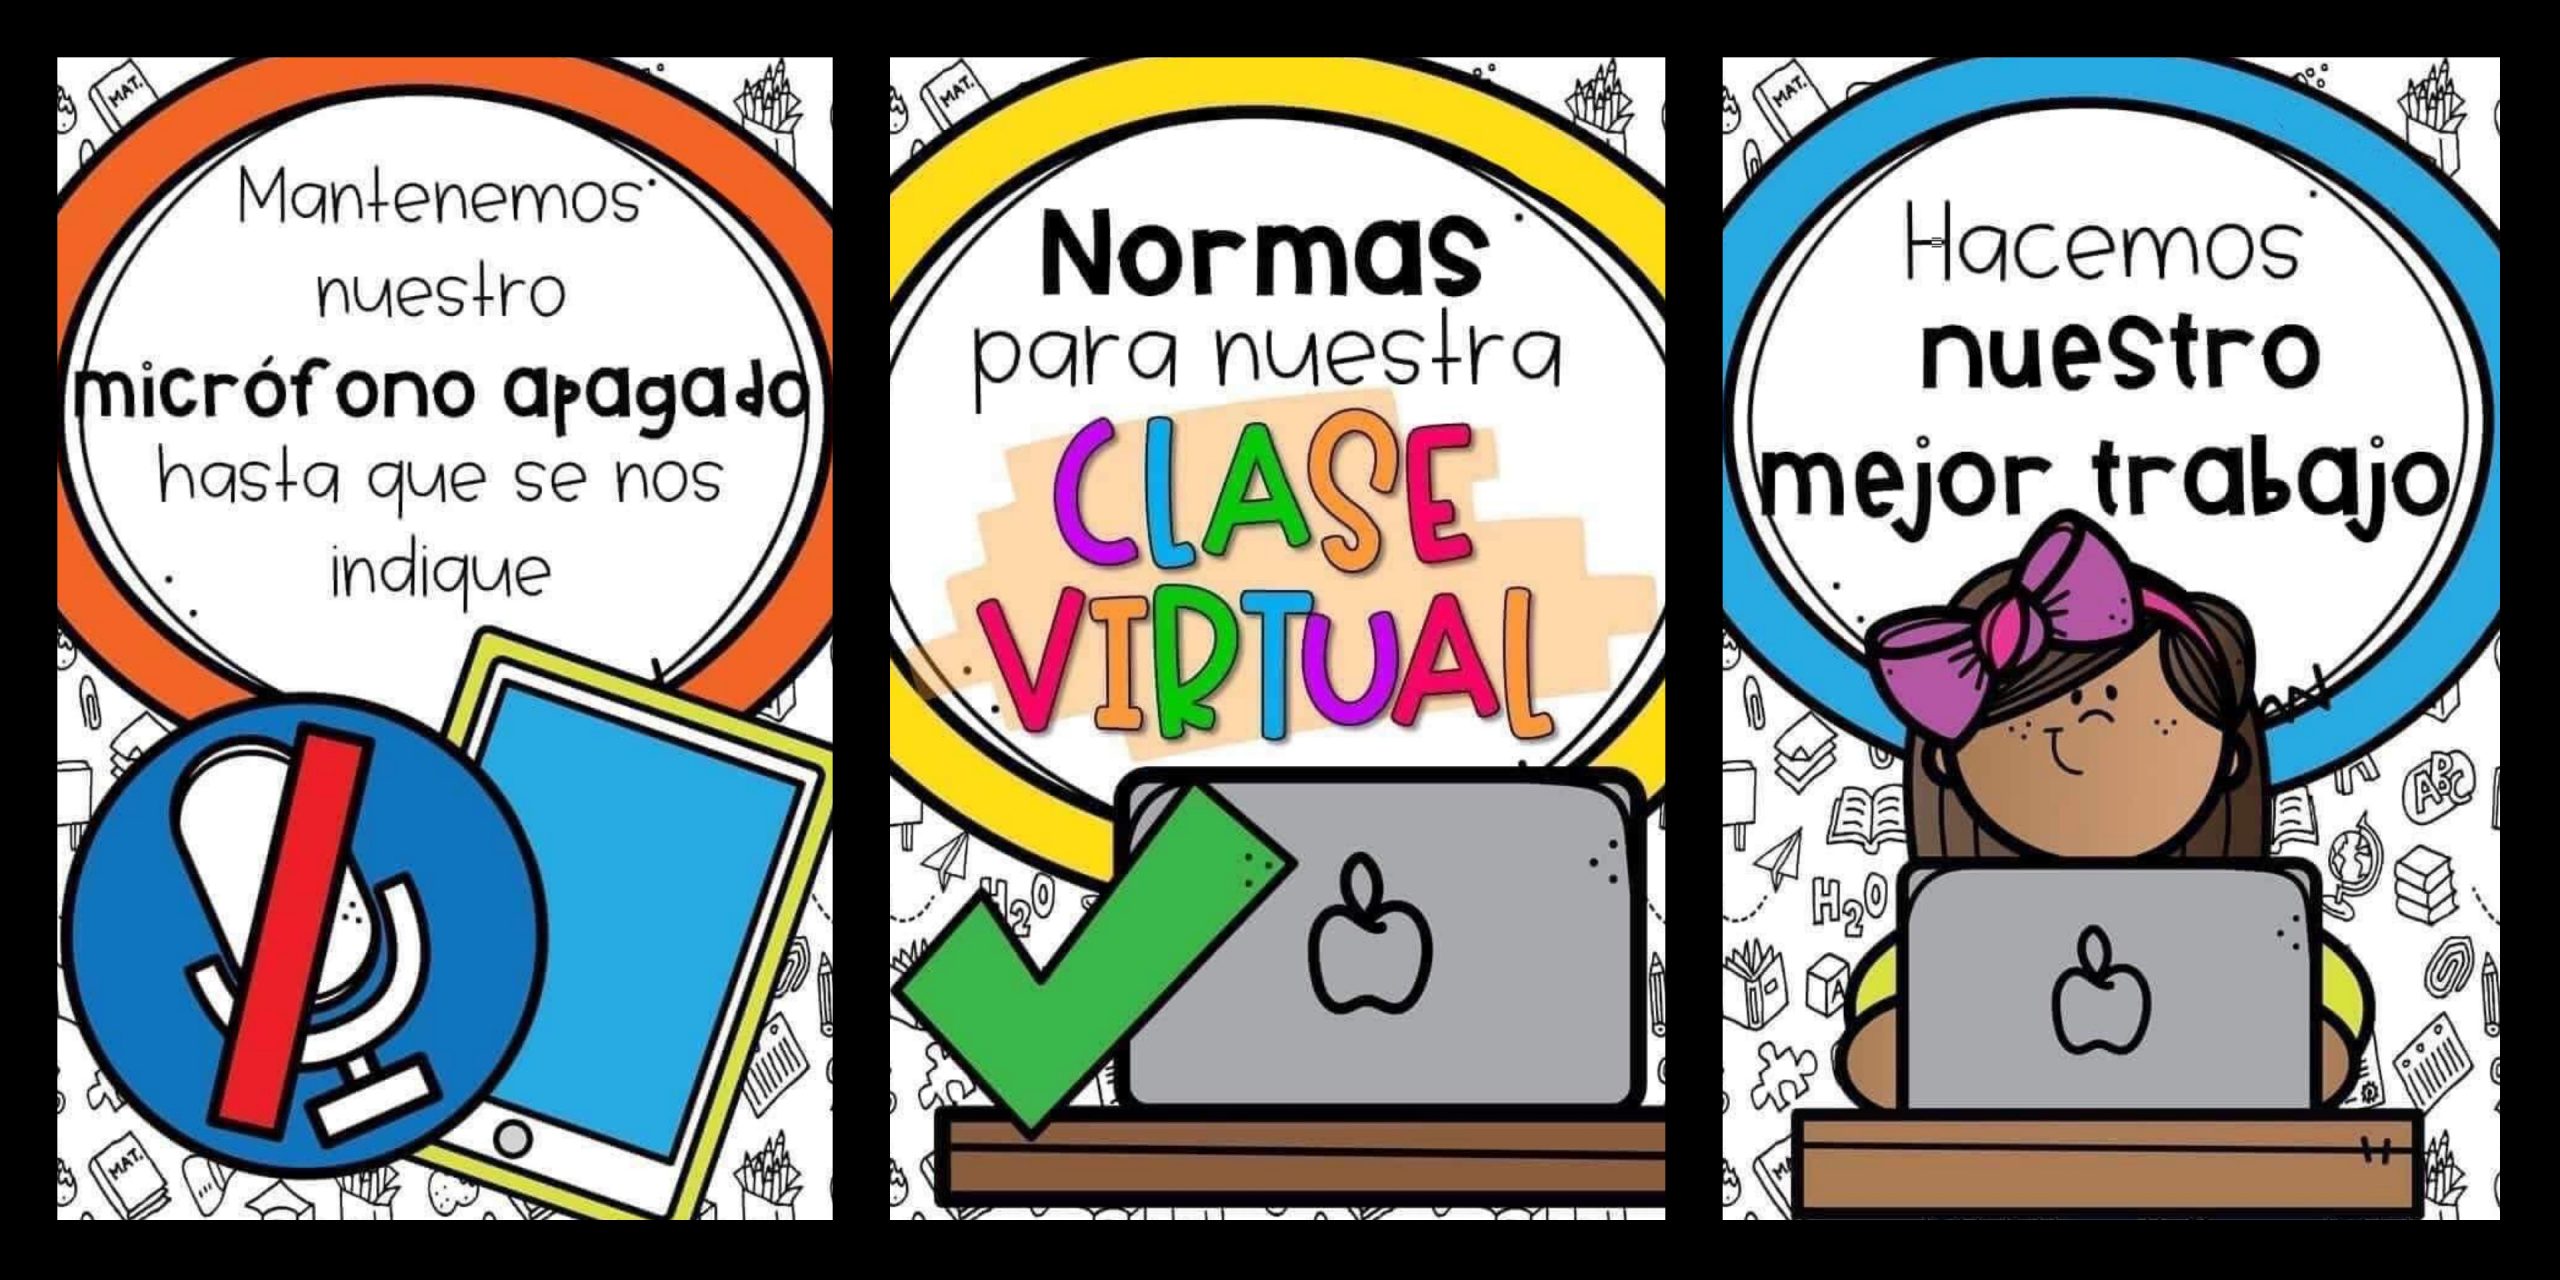 Normas Para Nuestra Clase Virtual Imagenes Educativas